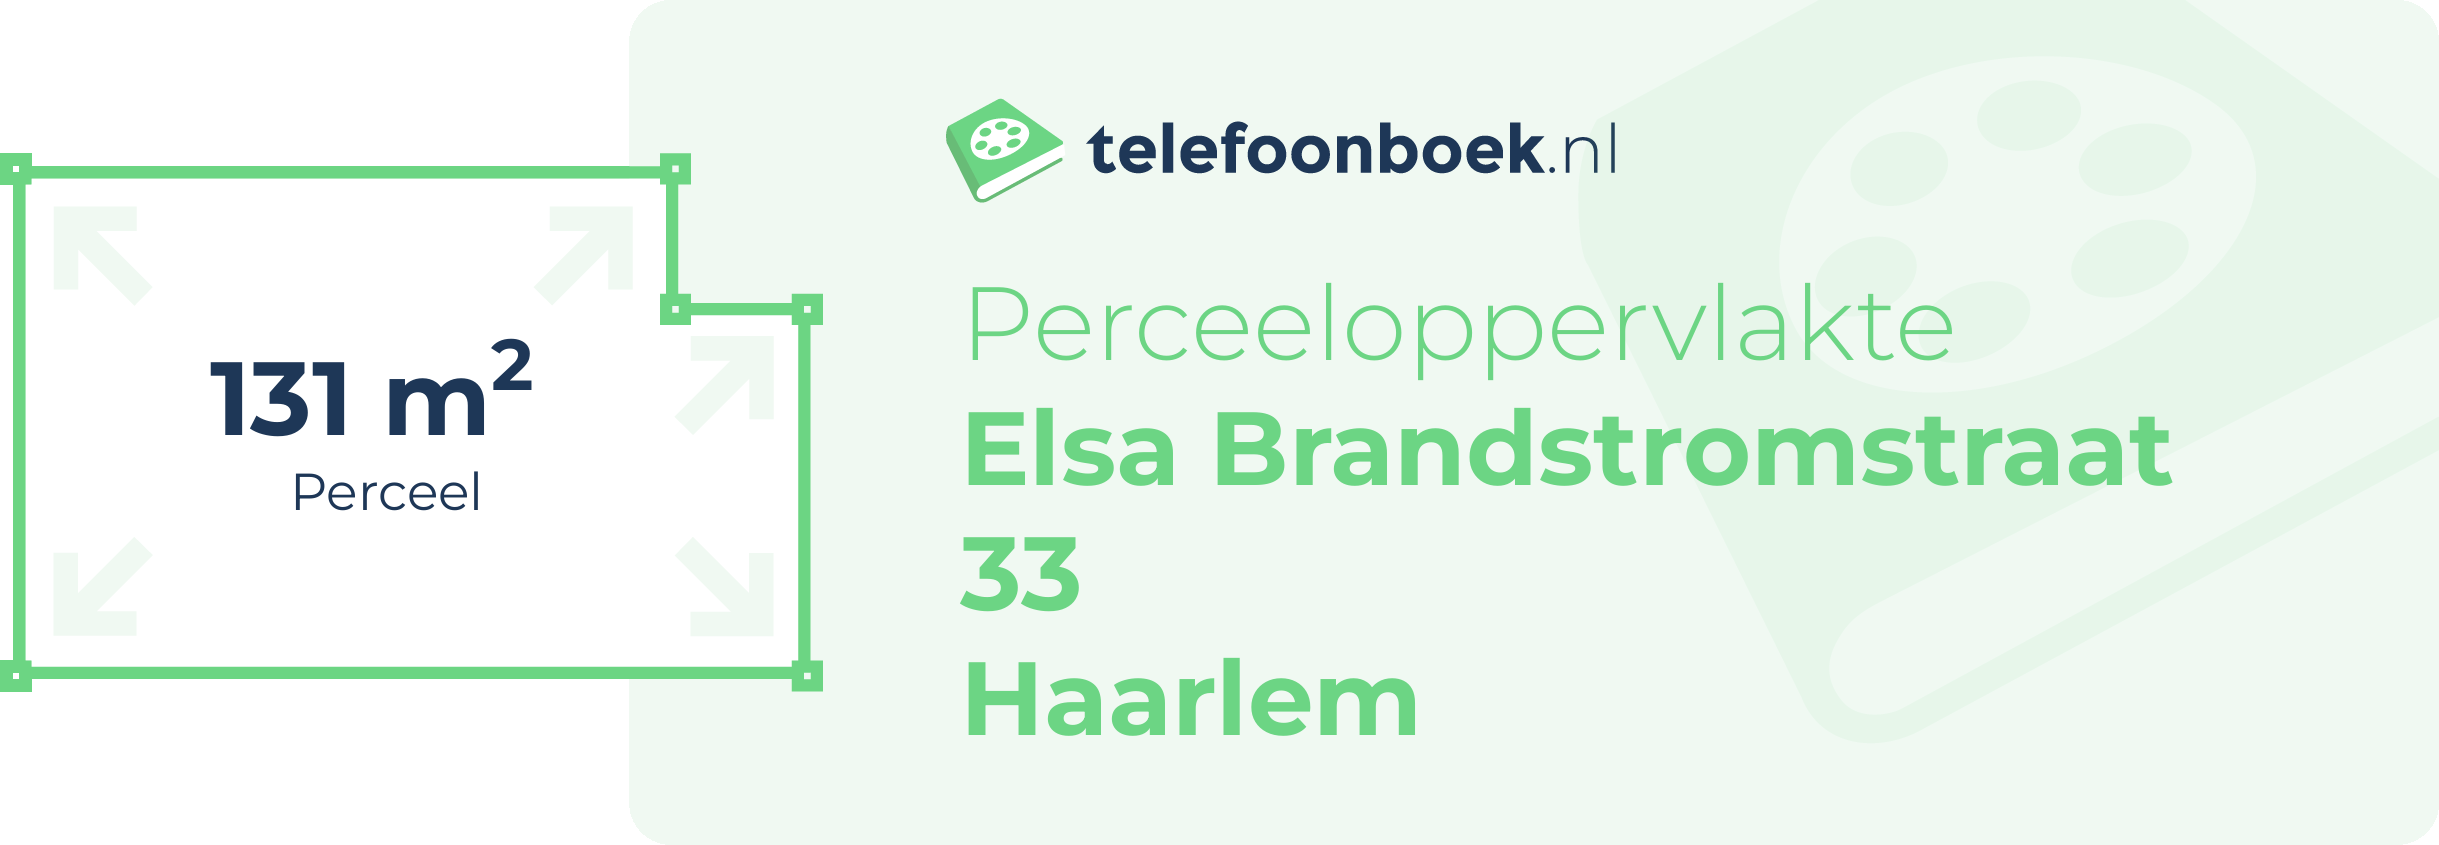 Perceeloppervlakte Elsa Brandstromstraat 33 Haarlem